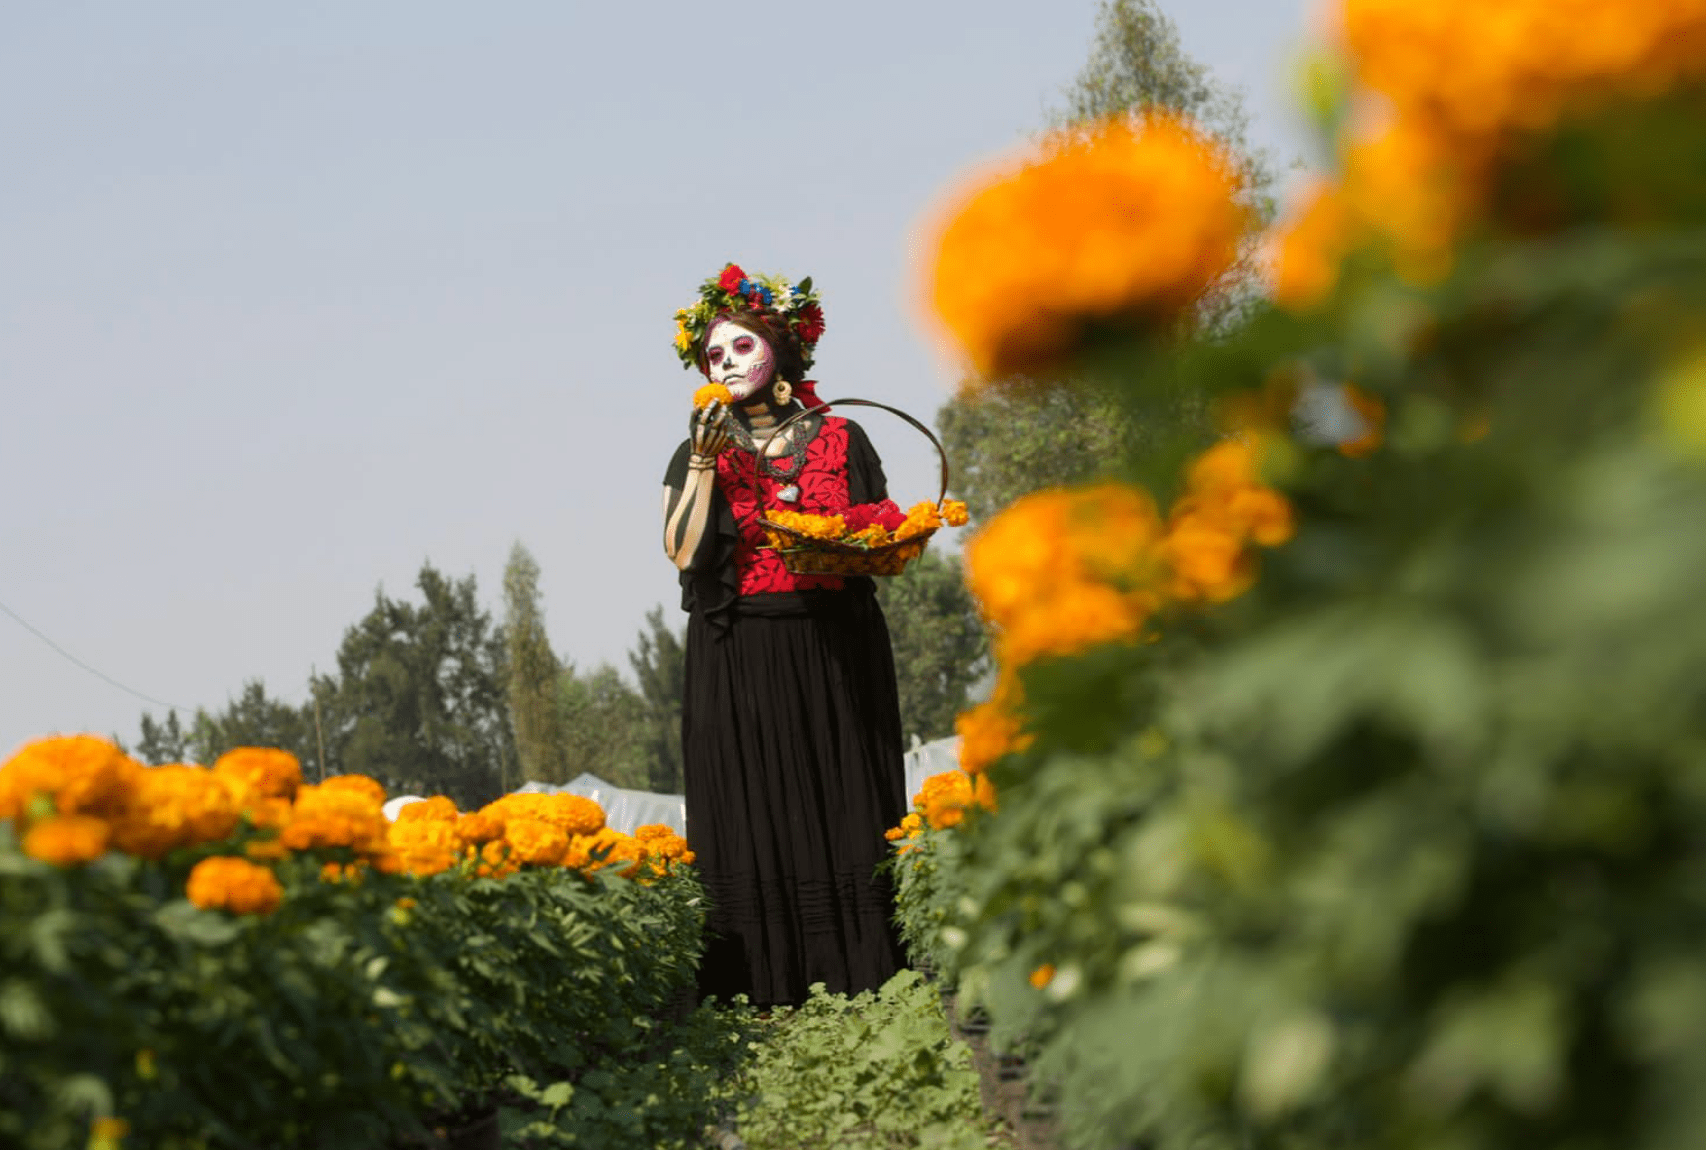 Aumenta producción de flor de cempasúchil en temporada 2022 de Día de Muertos